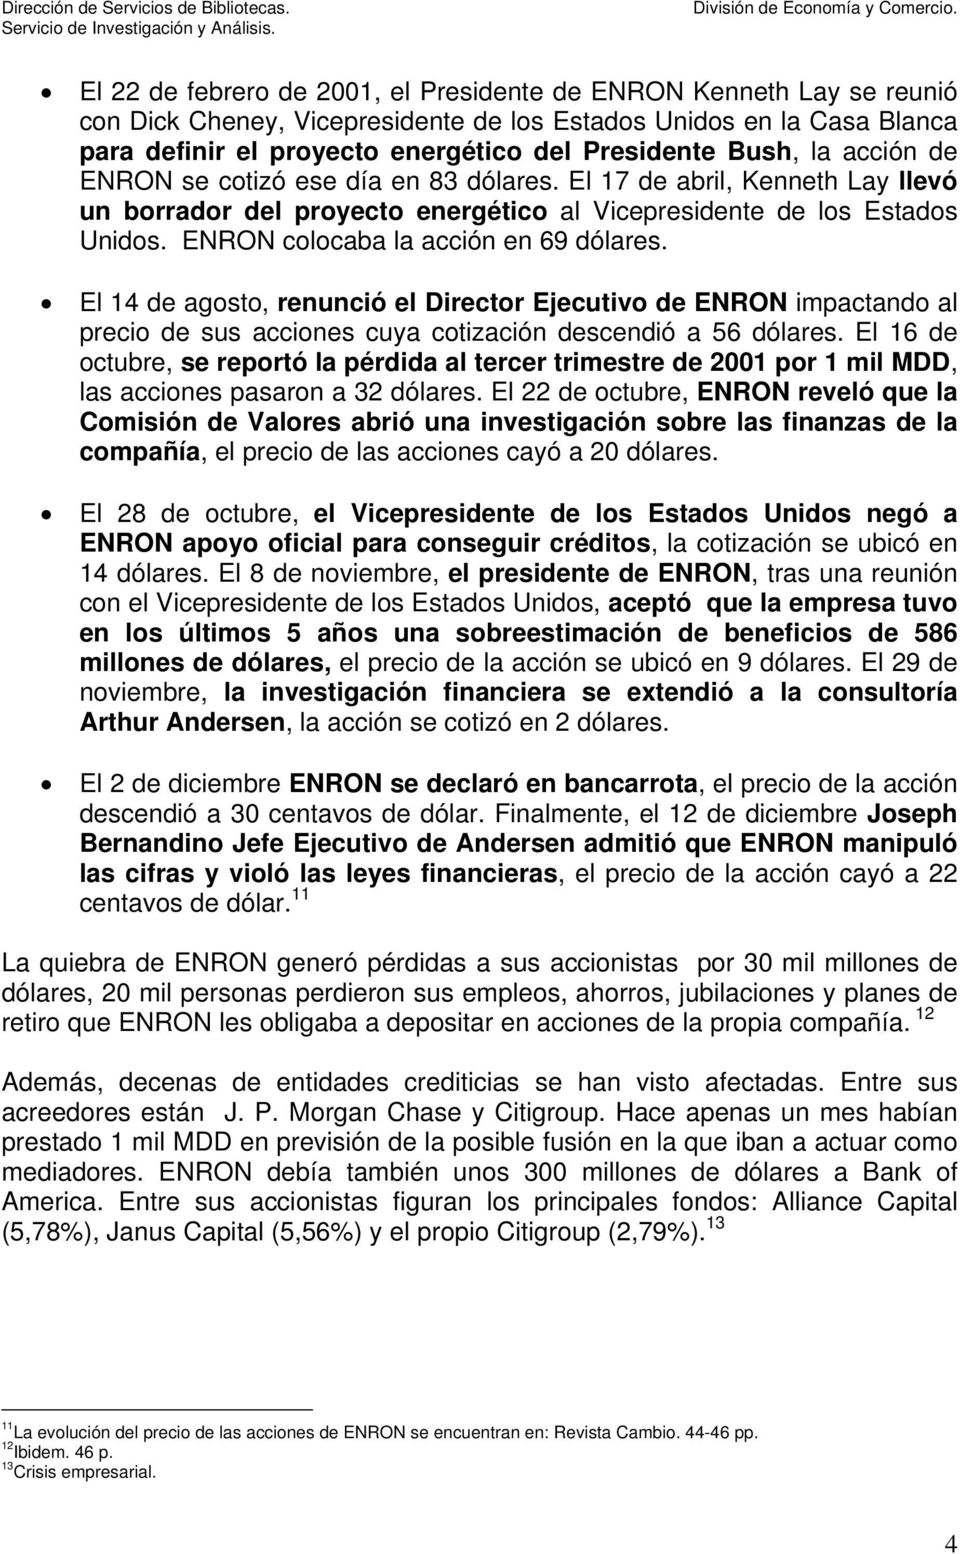 ENRON colocaba la acción en 69 dólares. El 14 de agosto, renunció el Director Ejecutivo de ENRON impactando al precio de sus acciones cuya cotización descendió a 56 dólares.